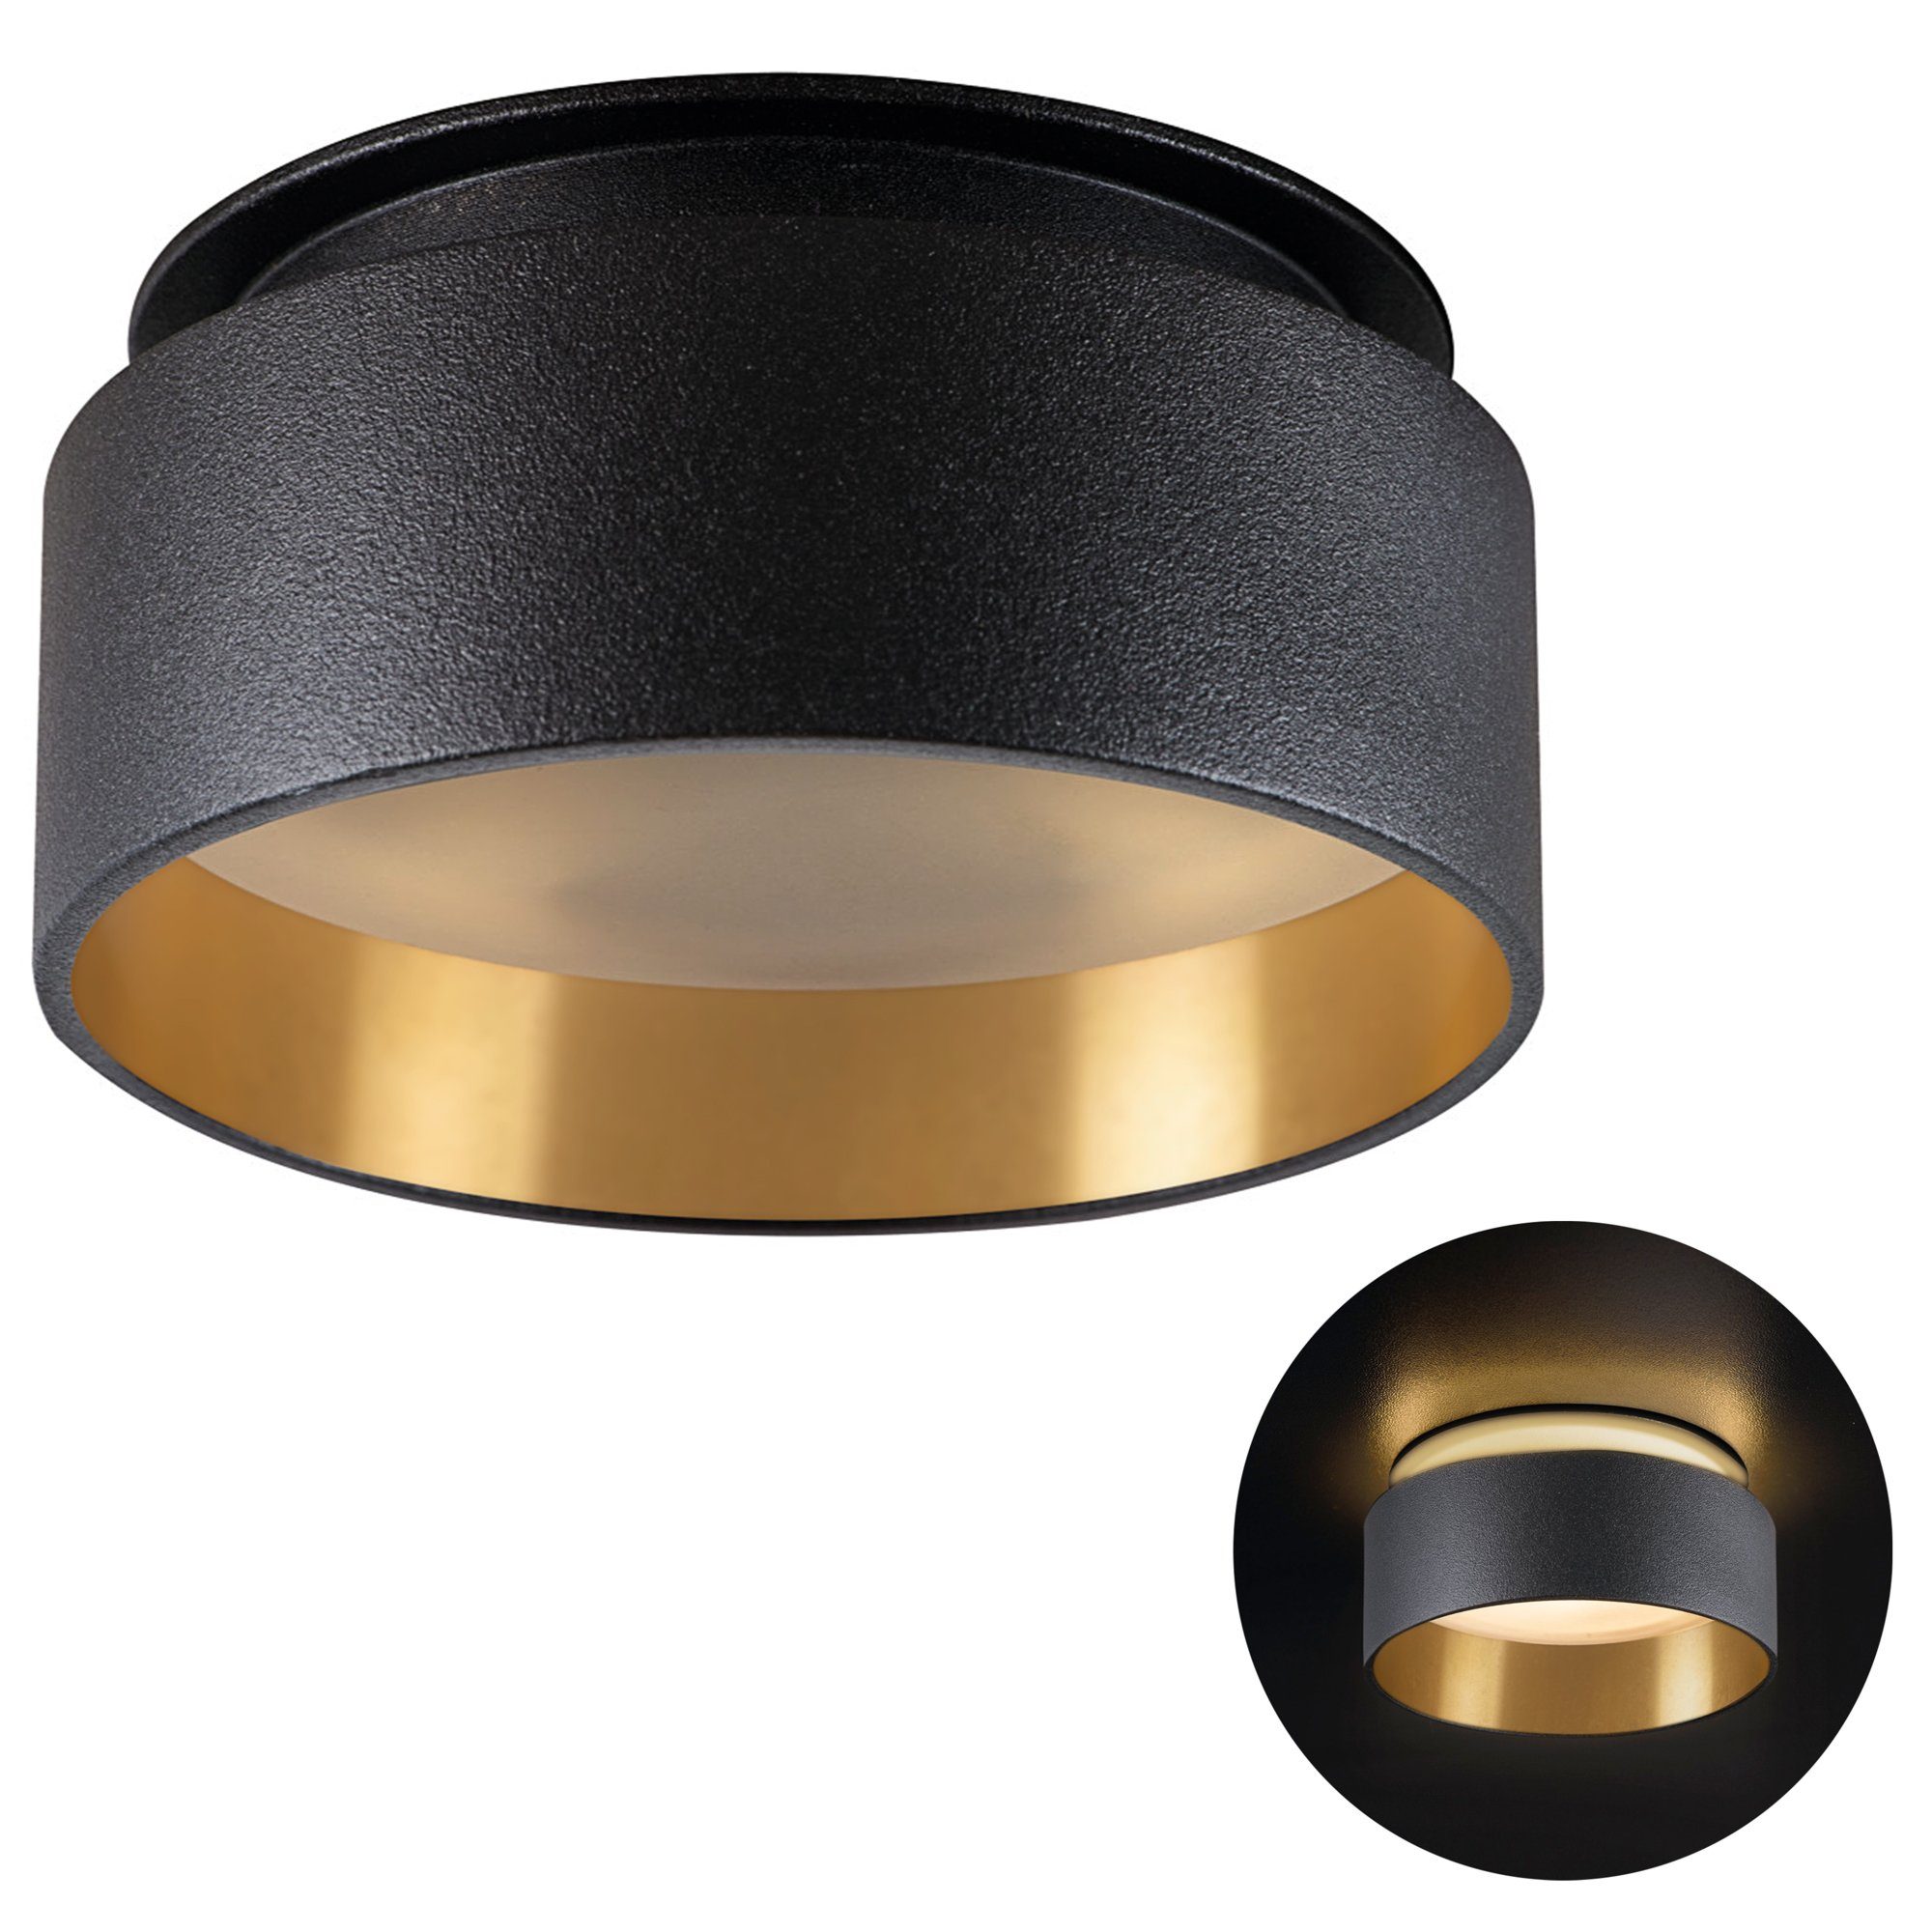 SSC-LUXon Aufbauleuchte Design LED Einbauspot Sudara schwarz gold indirektes Licht mit LED, Warmweiß